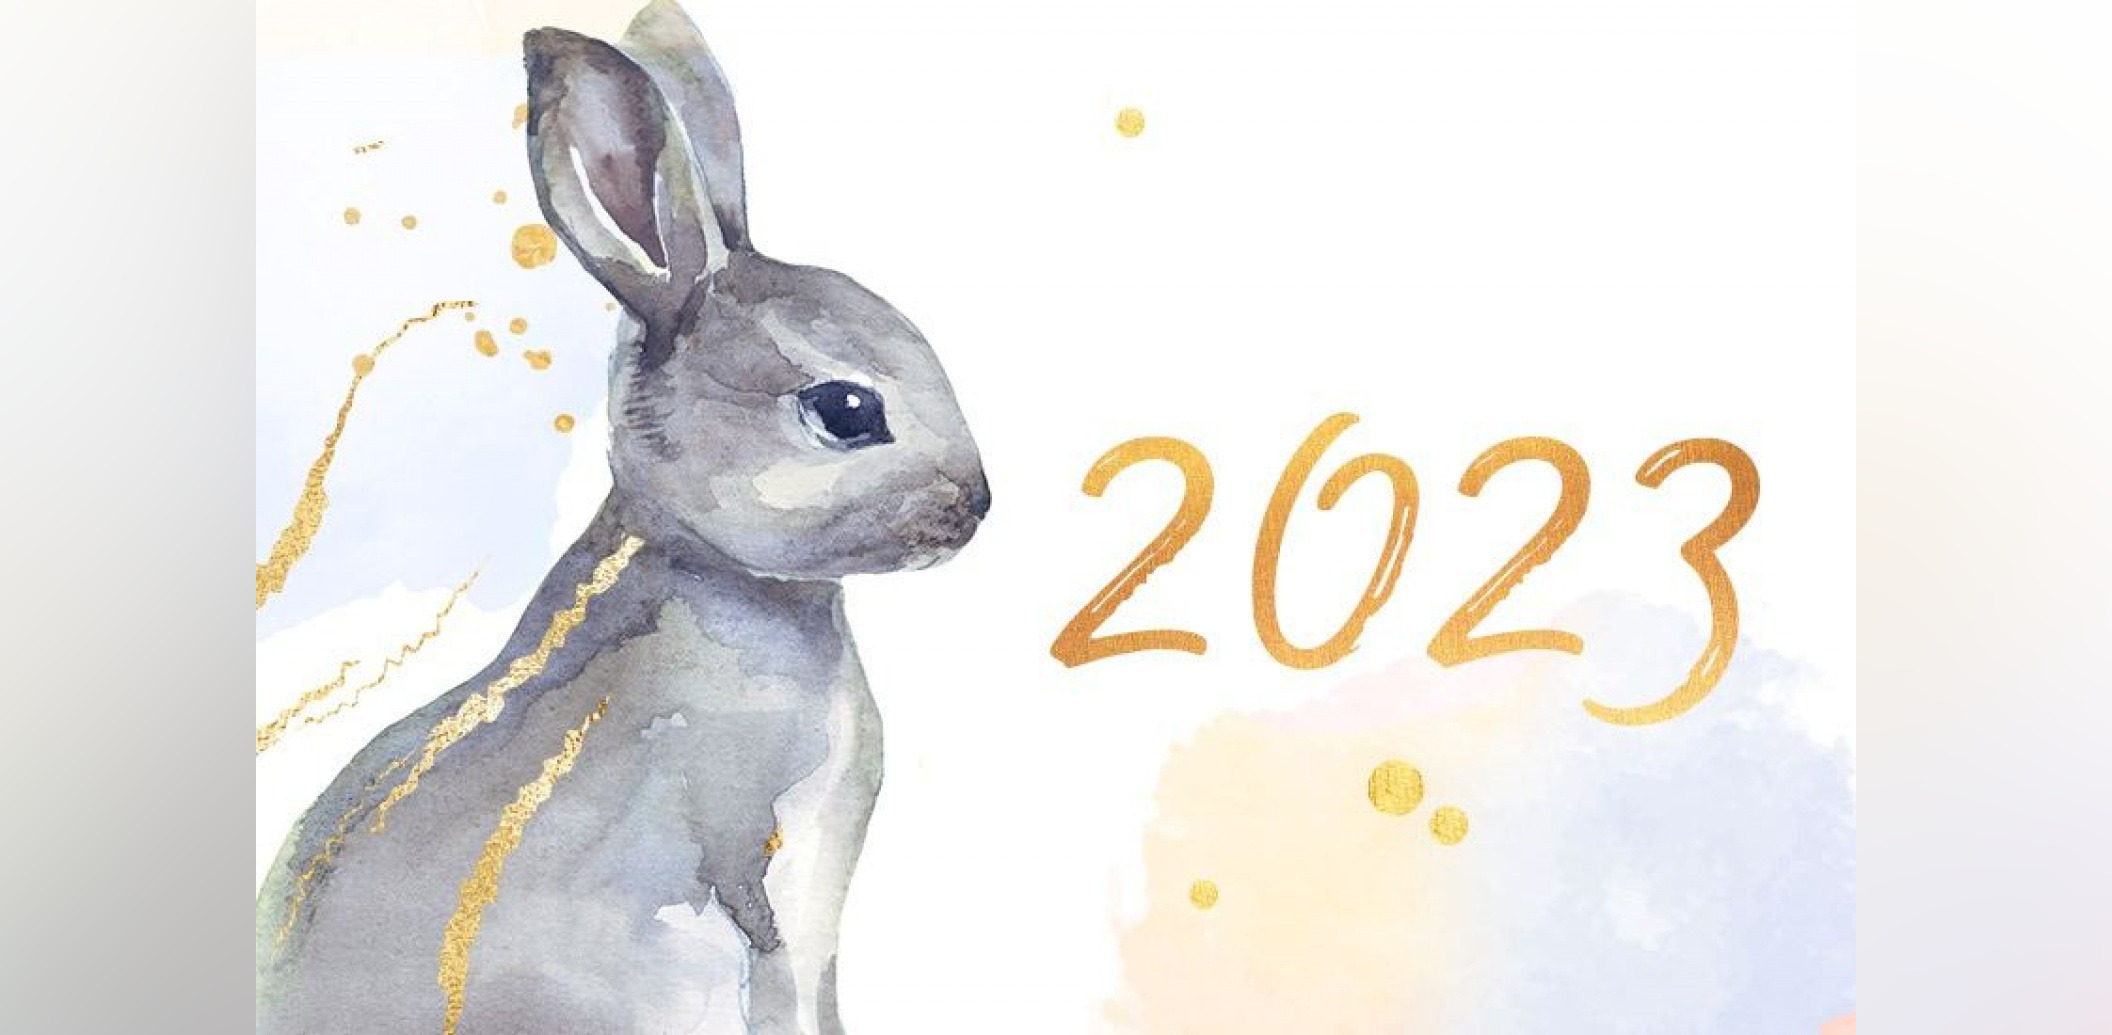 Какой год наступает 22. 2023 Год год кролика. Год кролика 2023 для кролика. Символ года 2023. Символ года 2023 картинки.